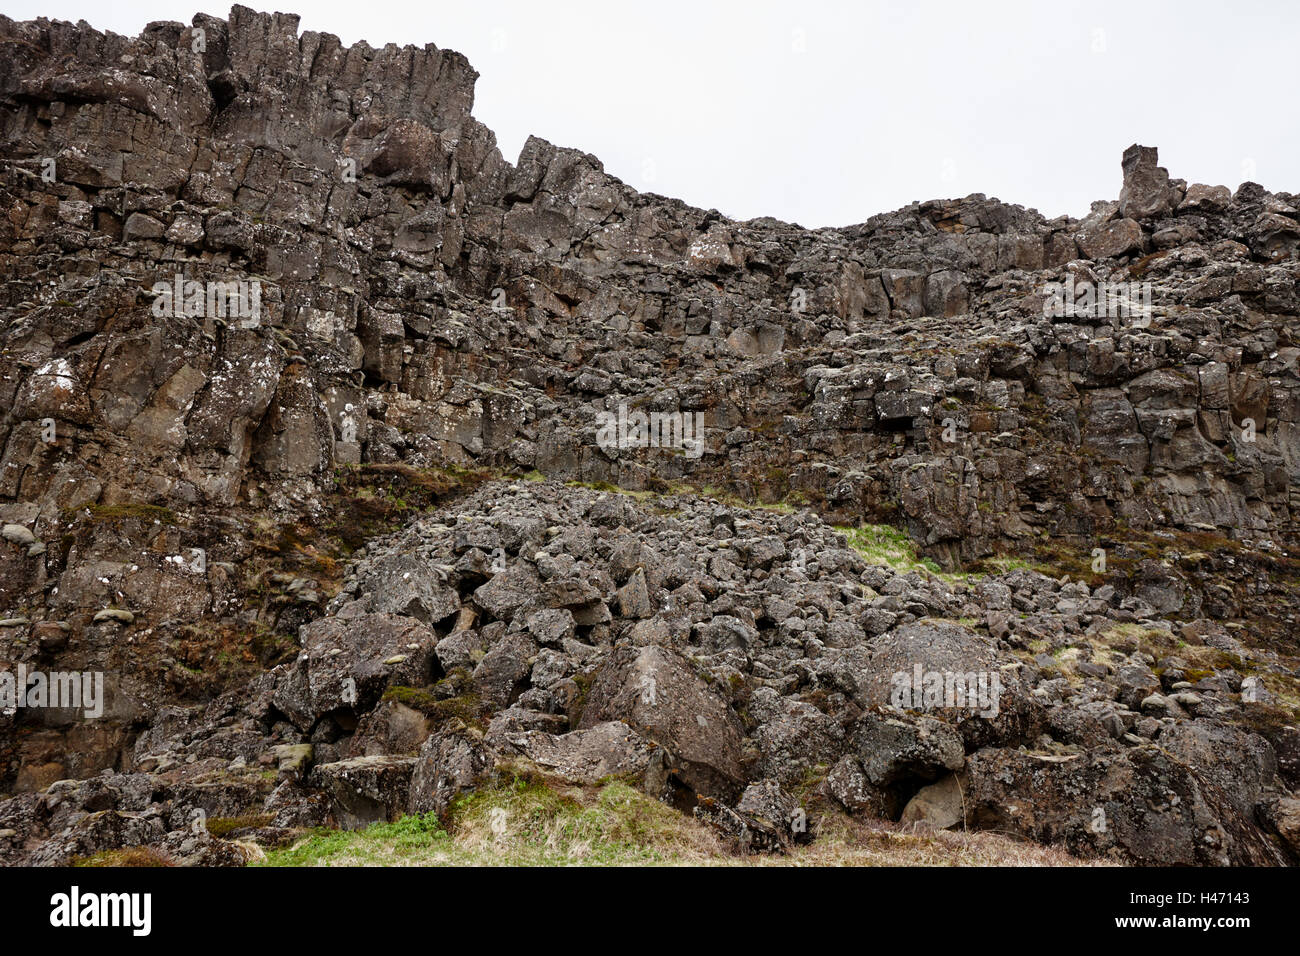 Mur de pierre de lave et éboulis dans des fissures dans les plaques continentales au parc national de thingvellir Islande Banque D'Images